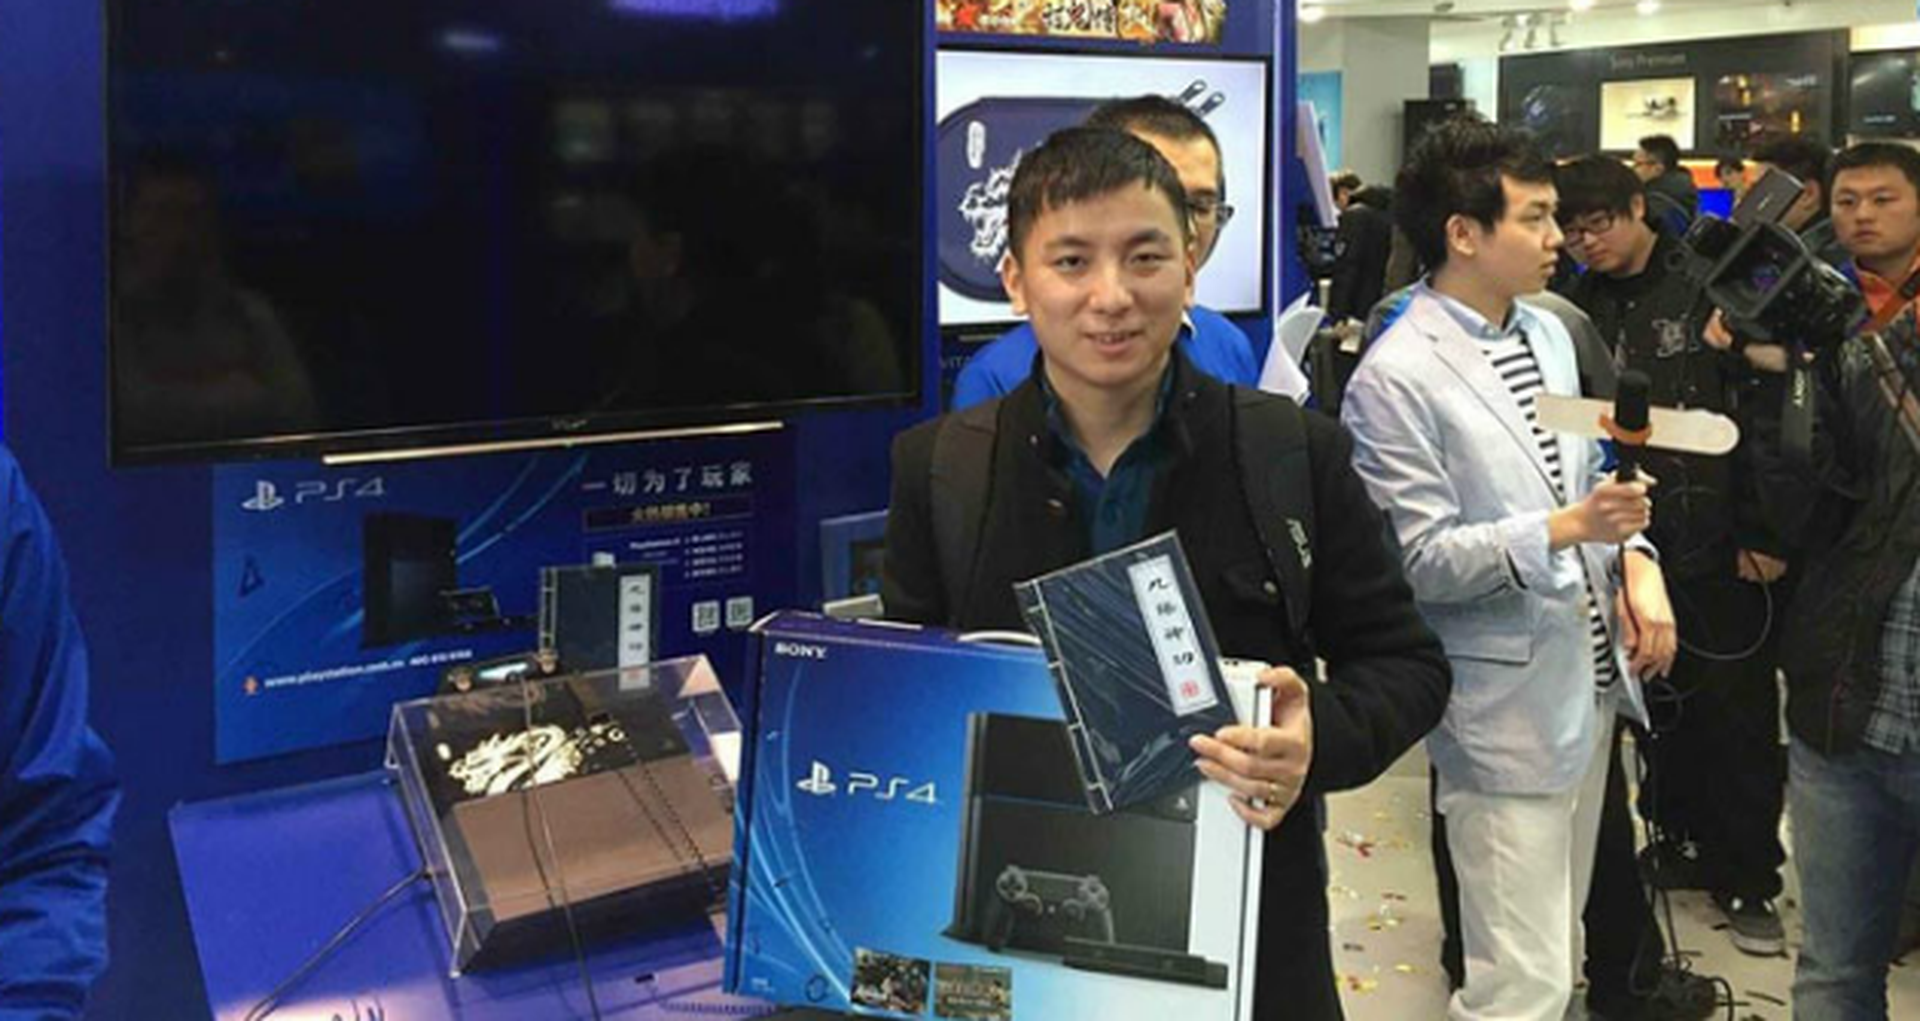 Lanzamiento de PlayStation 4 en China